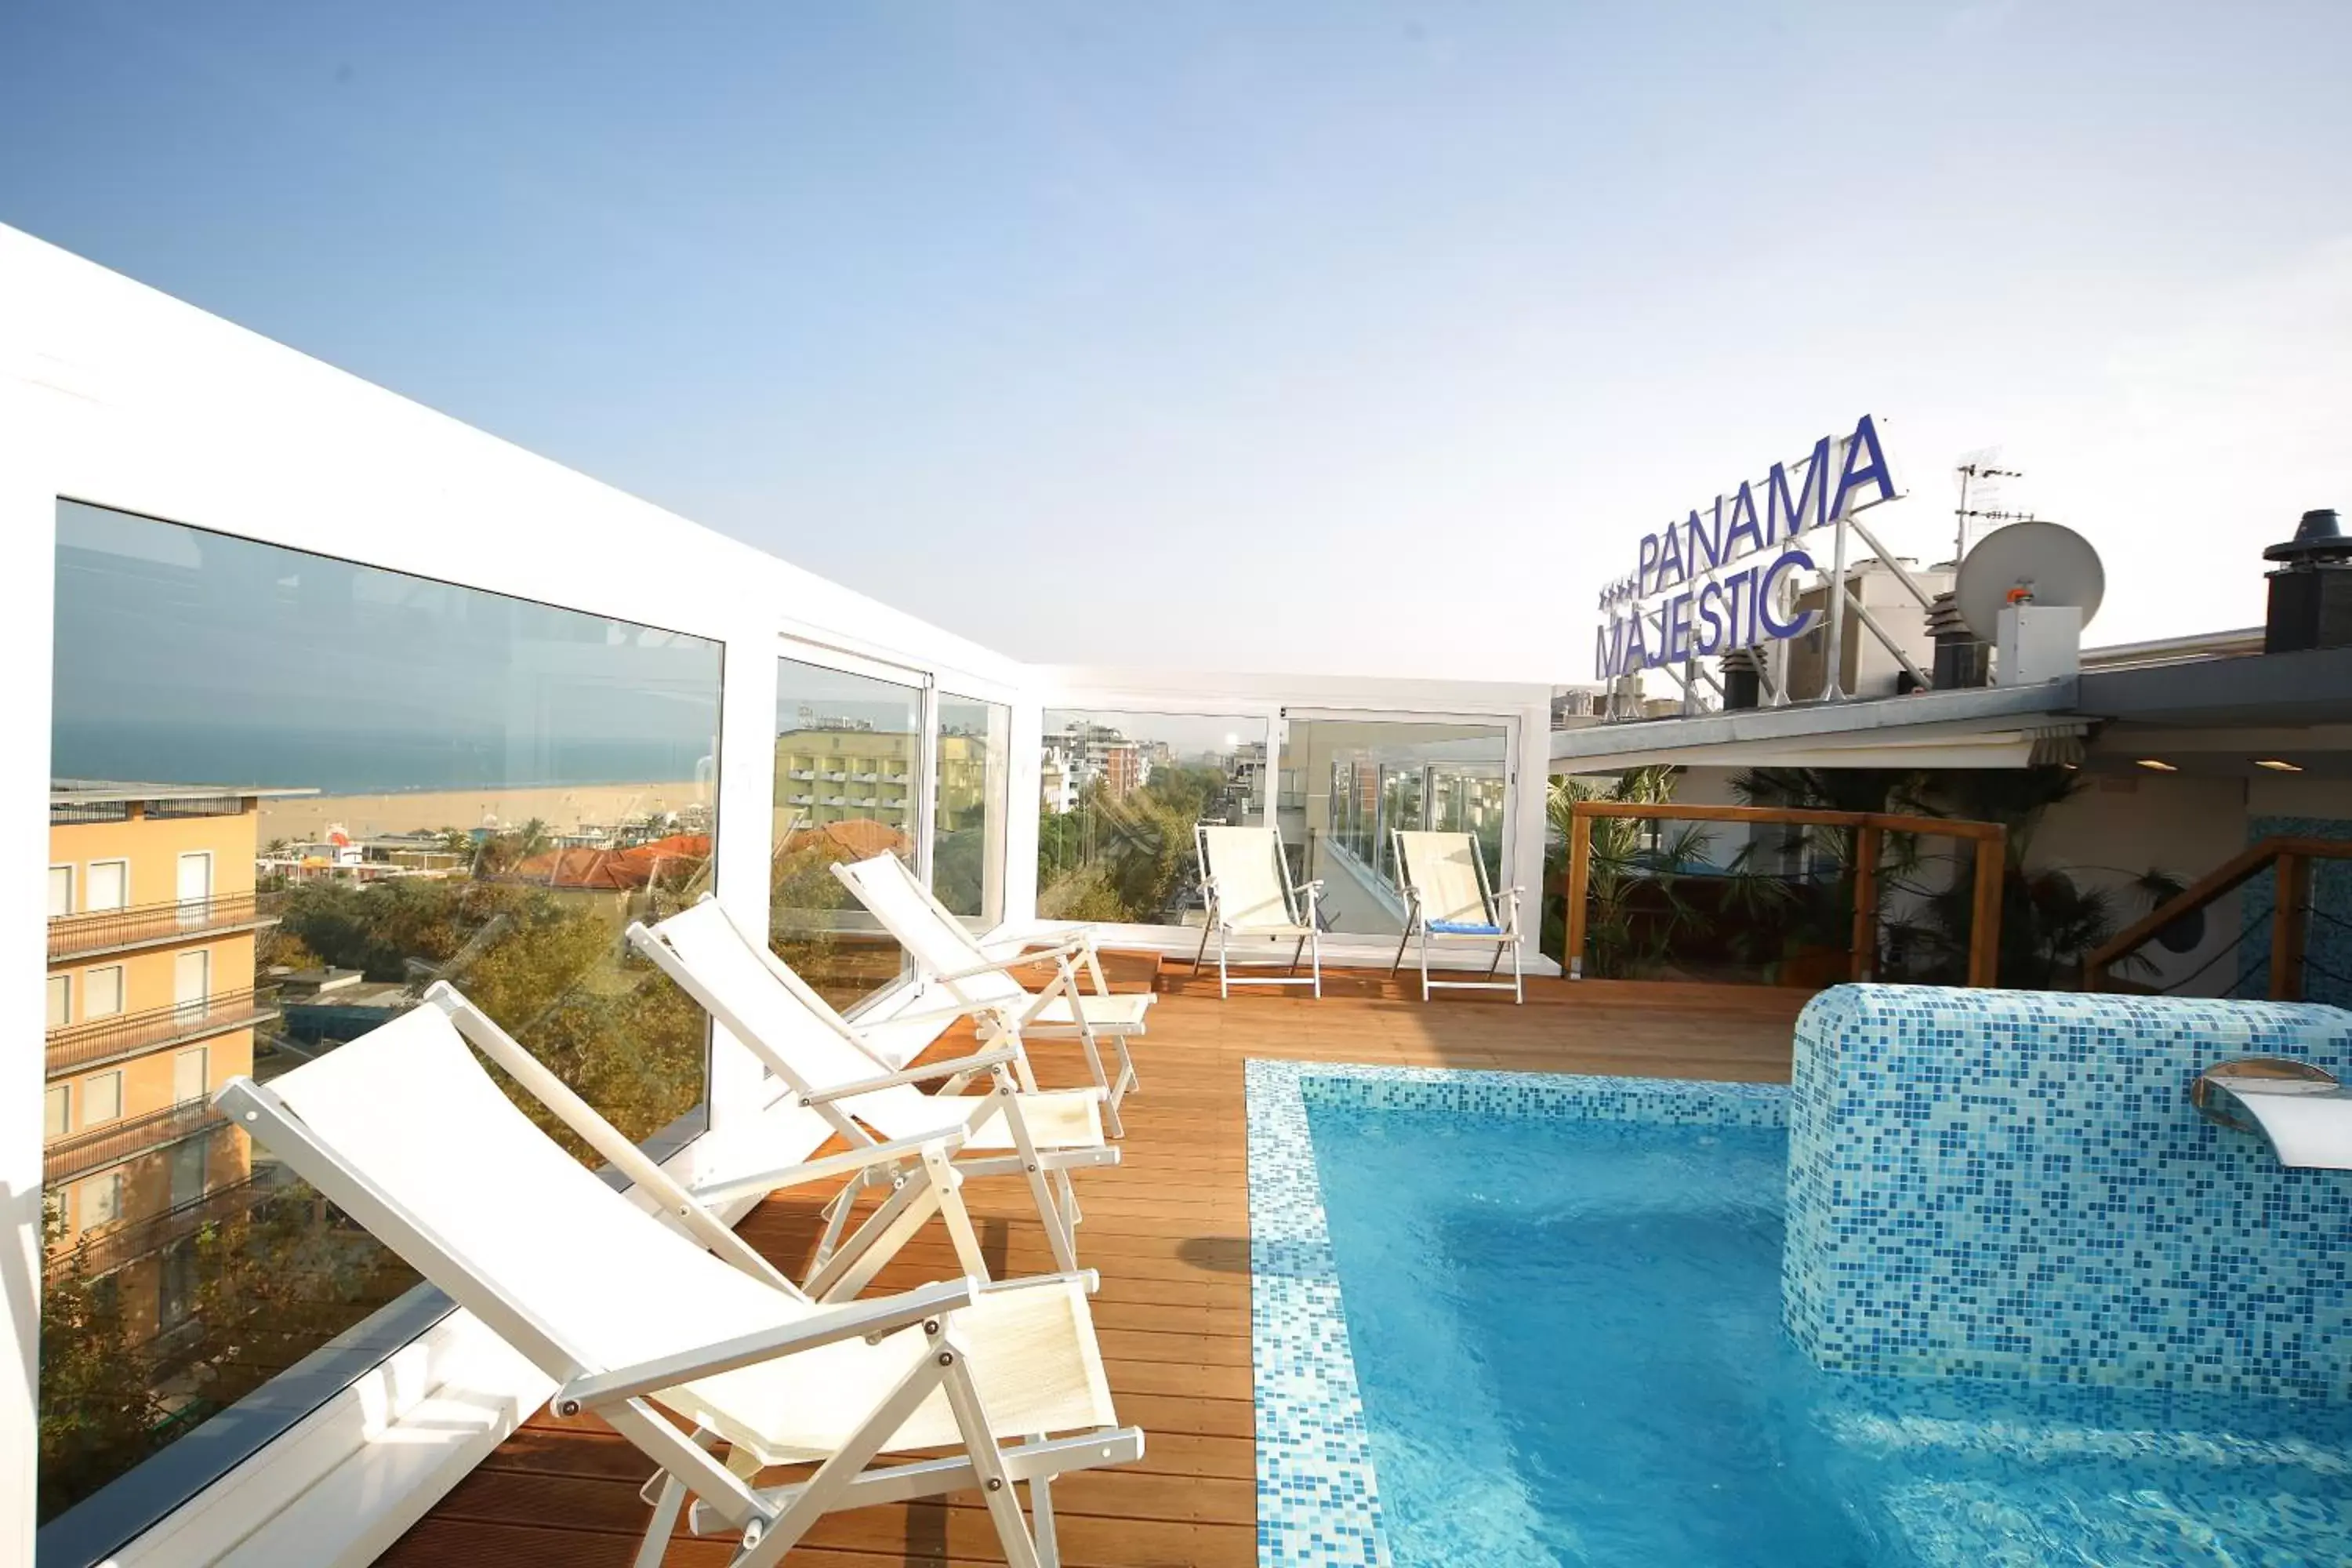 Solarium, Swimming Pool in Hotel Panama Majestic